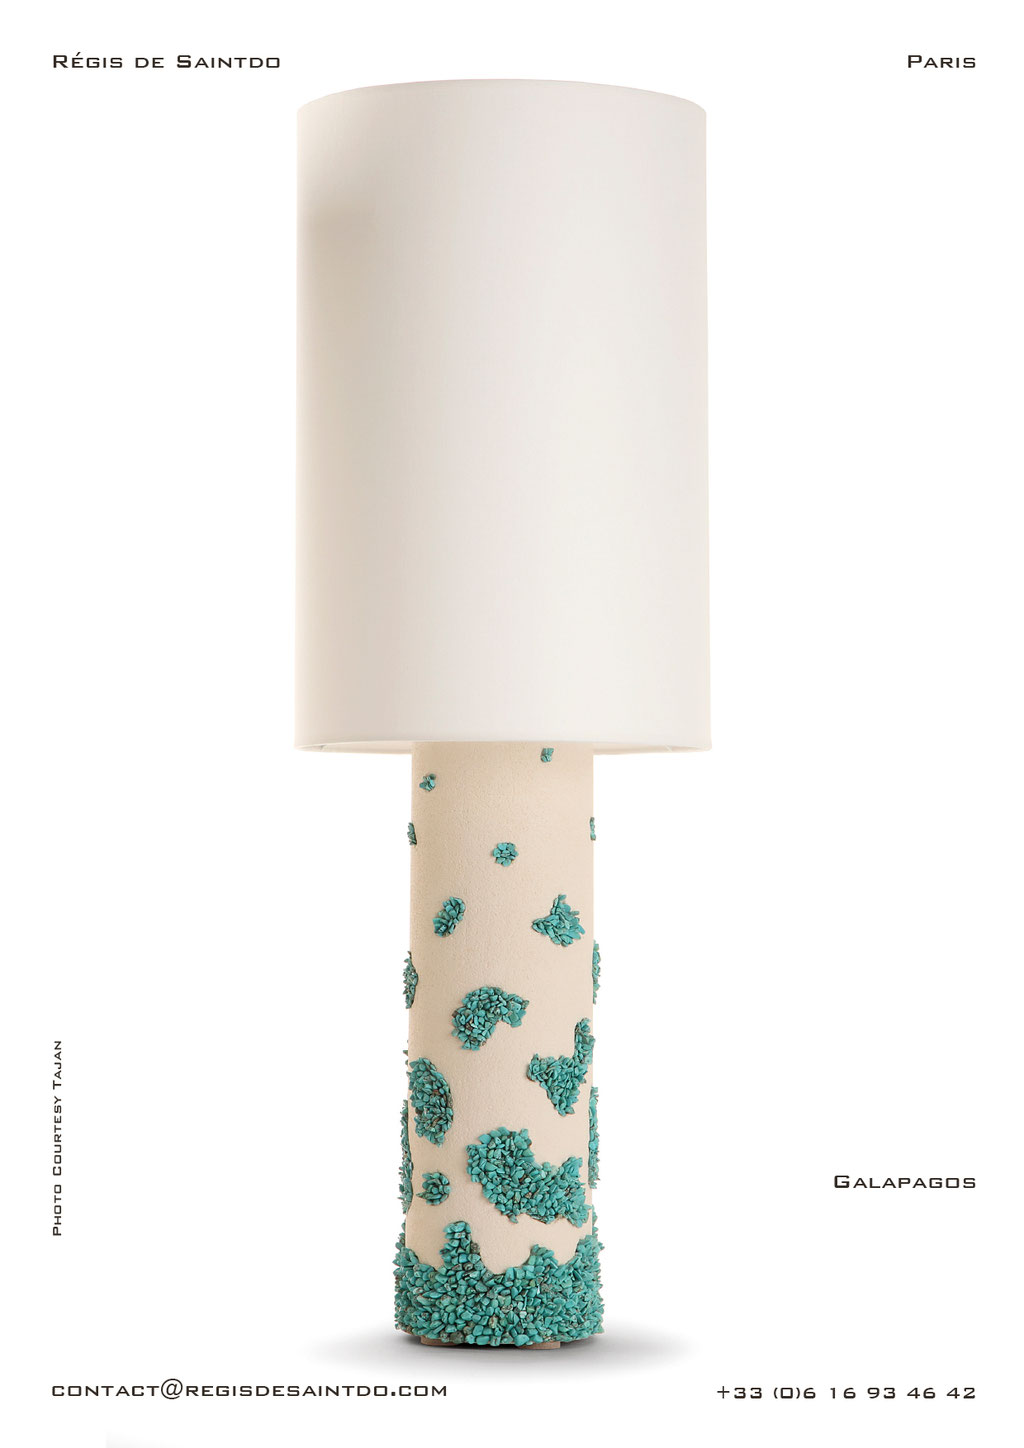 Lampe Galapagos en céramique, howlite turquoises- faites main @Régis de Saintdo